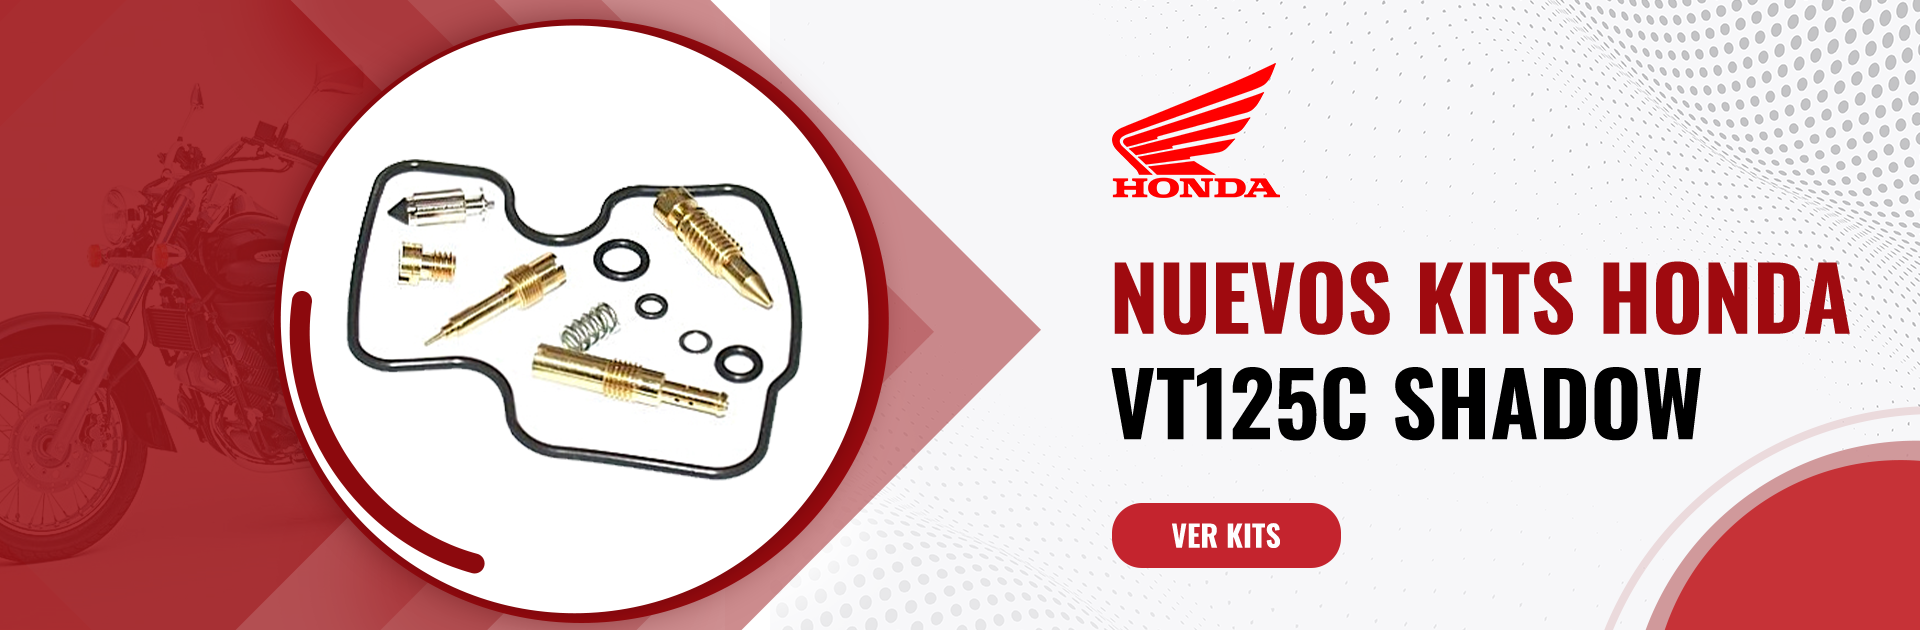 Nuevos Kits Honda VT125 Shadow